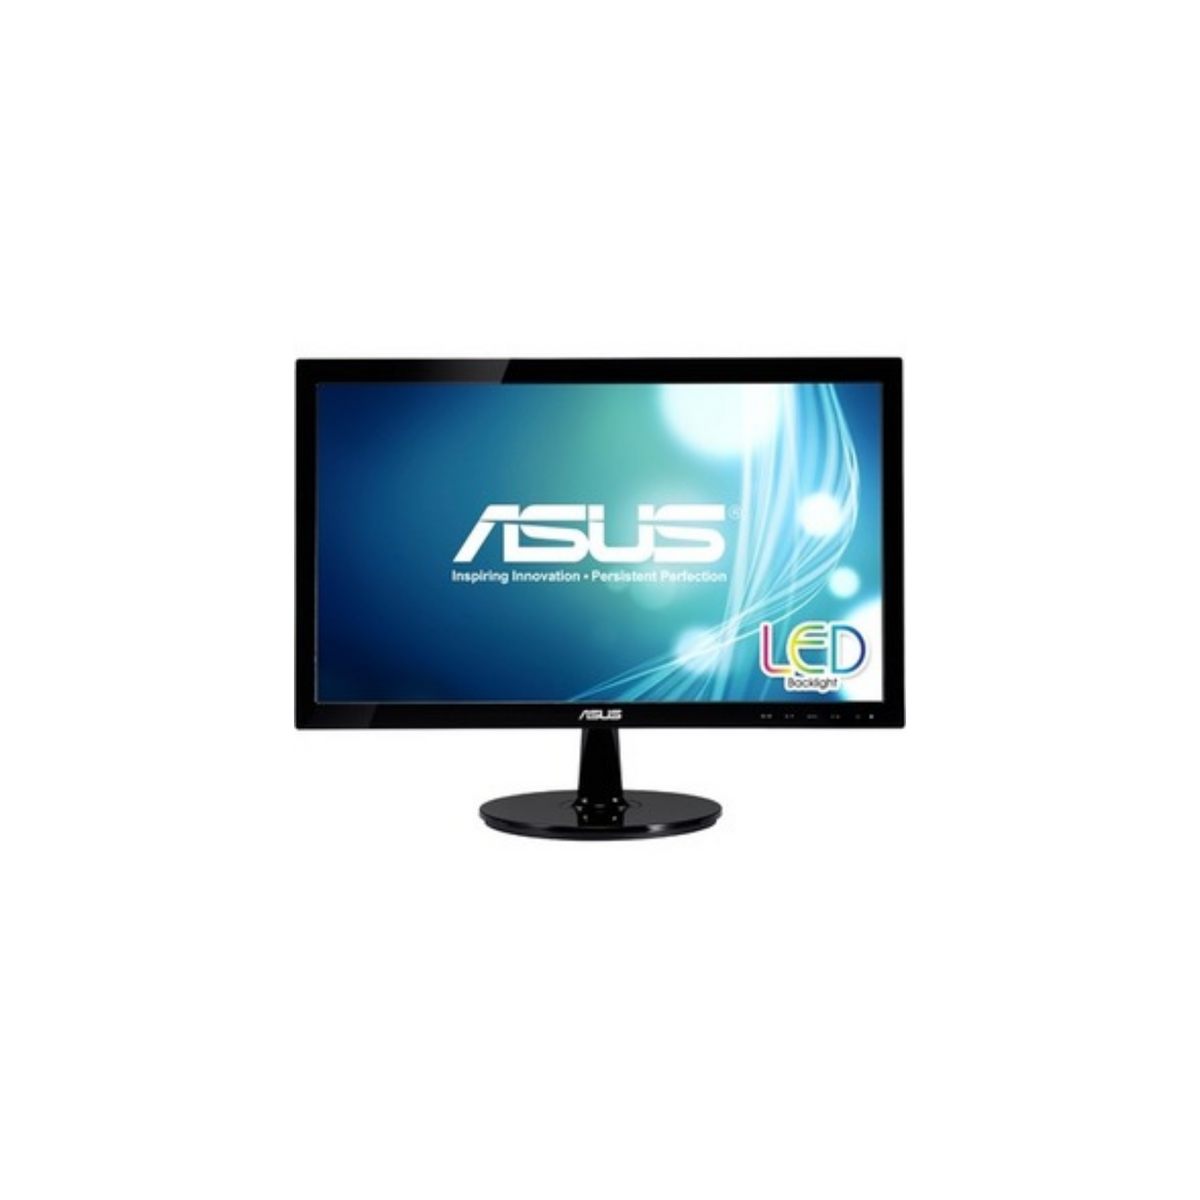 Asus VS207T-P 19.5" HD+ LED LCD Monitor - 16:9 - Black - 1600 x 900 - 16.7 Million Colors - 250 Nit - 5 ms - 75 Hz Refresh Rate - 2 Speaker(s) - DVI - VGA VGA DVI-D SPKR HDCP